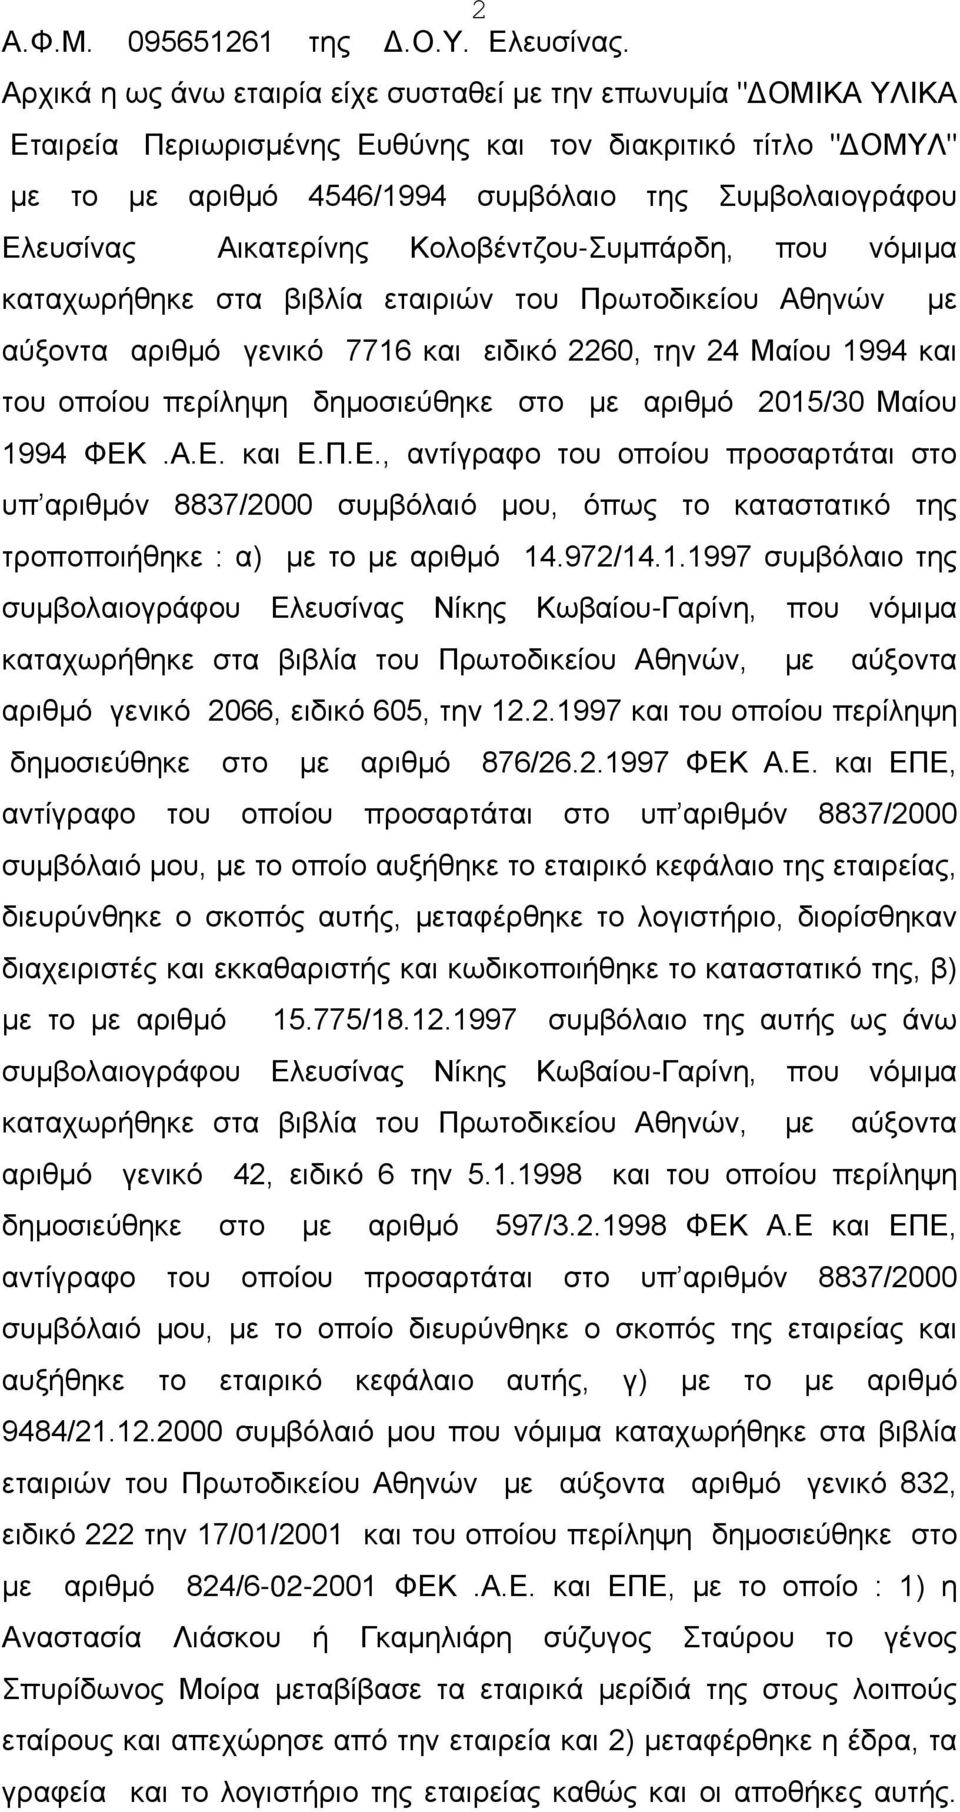 Αικατερίνης Κολοβέντζου-Συμπάρδη, που νόμιμα καταχωρήθηκε στα βιβλία εταιριών του Πρωτοδικείου Αθηνών αύξοντα αριθμό γενικό 7716 και ειδικό 2260, την 24 Μαίου 1994 και του οποίου περίληψη